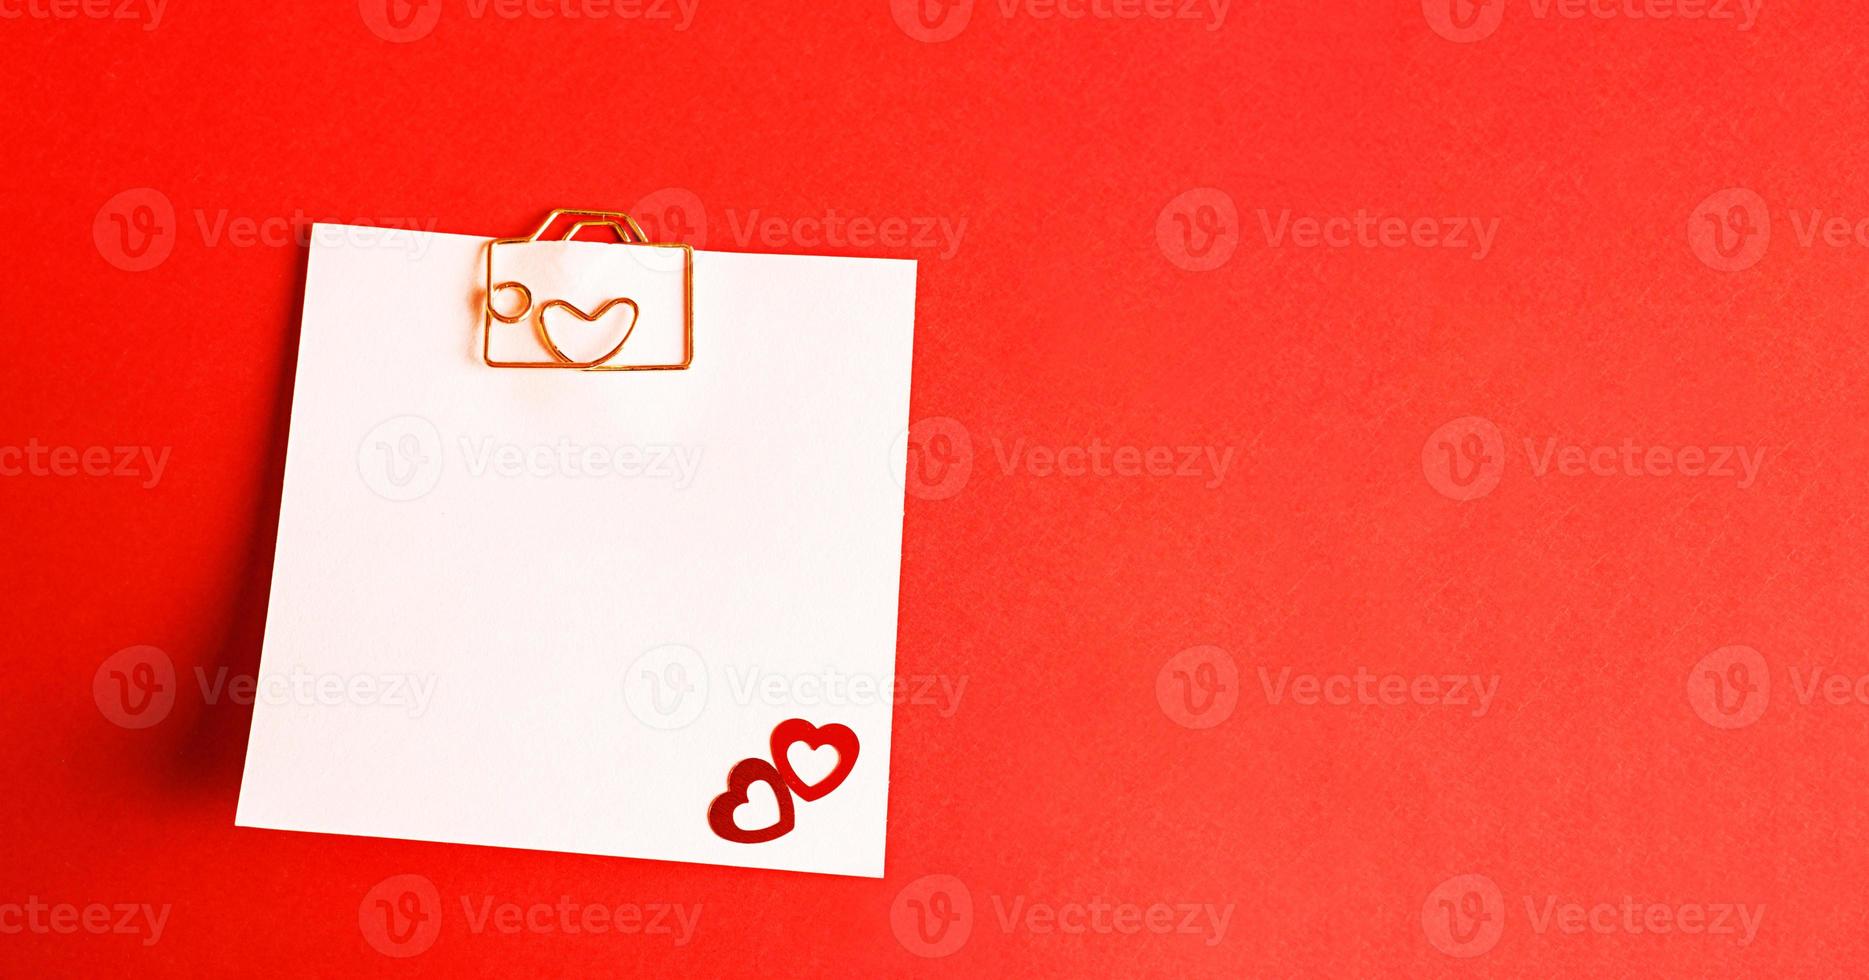 folha quadrada para notas com um clipe de papel em forma de carta e coração. decoração de casais apaixonados por corações em um fundo vermelho. dia dos namorados, mensagem, saudação, declaração de amor. espaço de cópia foto